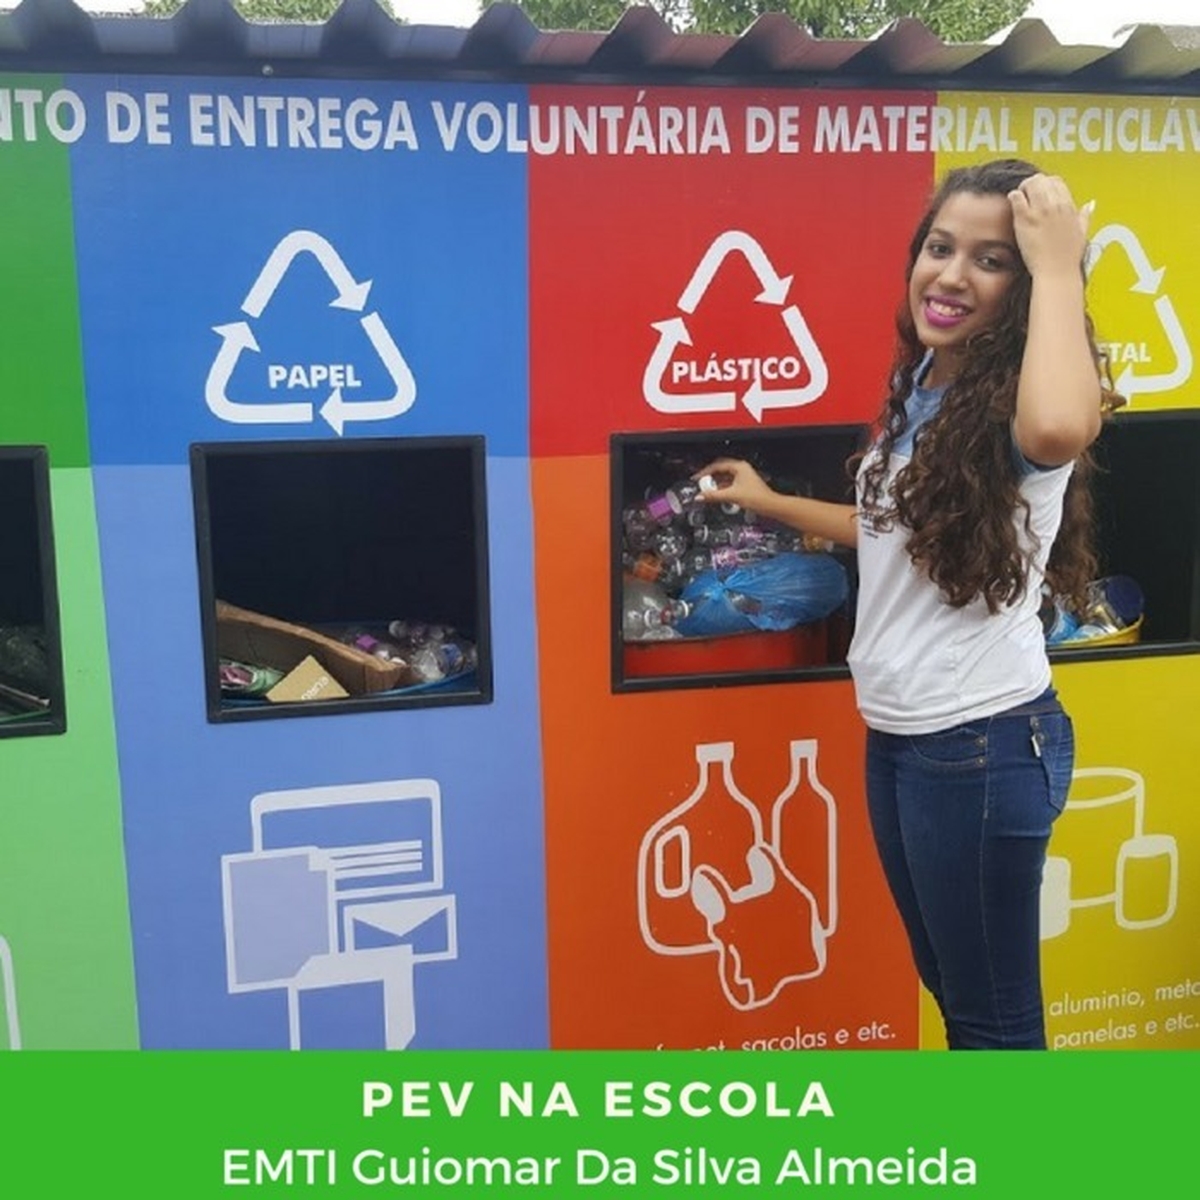 Limpa Brasil - Let's do it Escola Ponto Permanente de Recicláveis - EMTI Guiomar da Silva Almeida